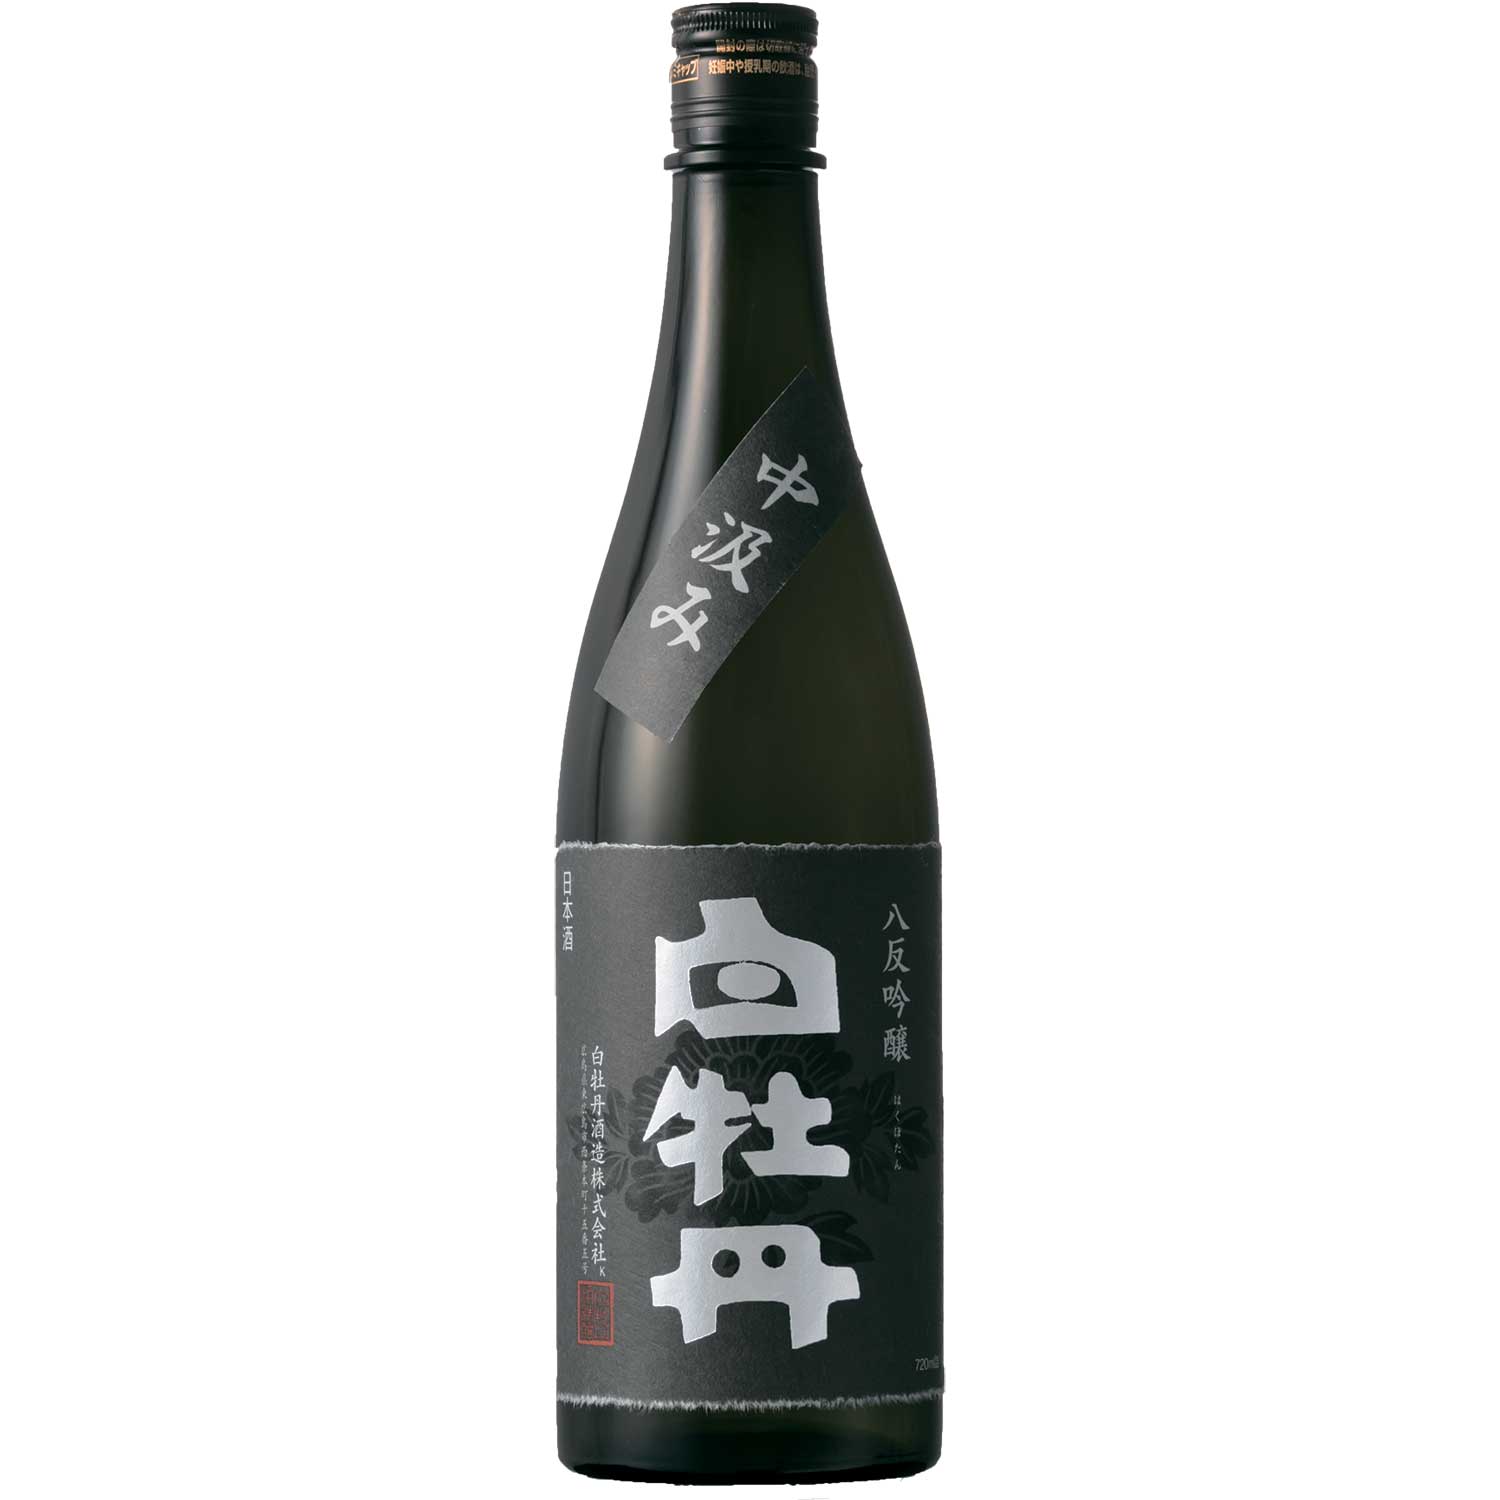 【日本酒 白牡丹】広島八反吟醸酒 中汲み 720ml瓶詰【流通限定】